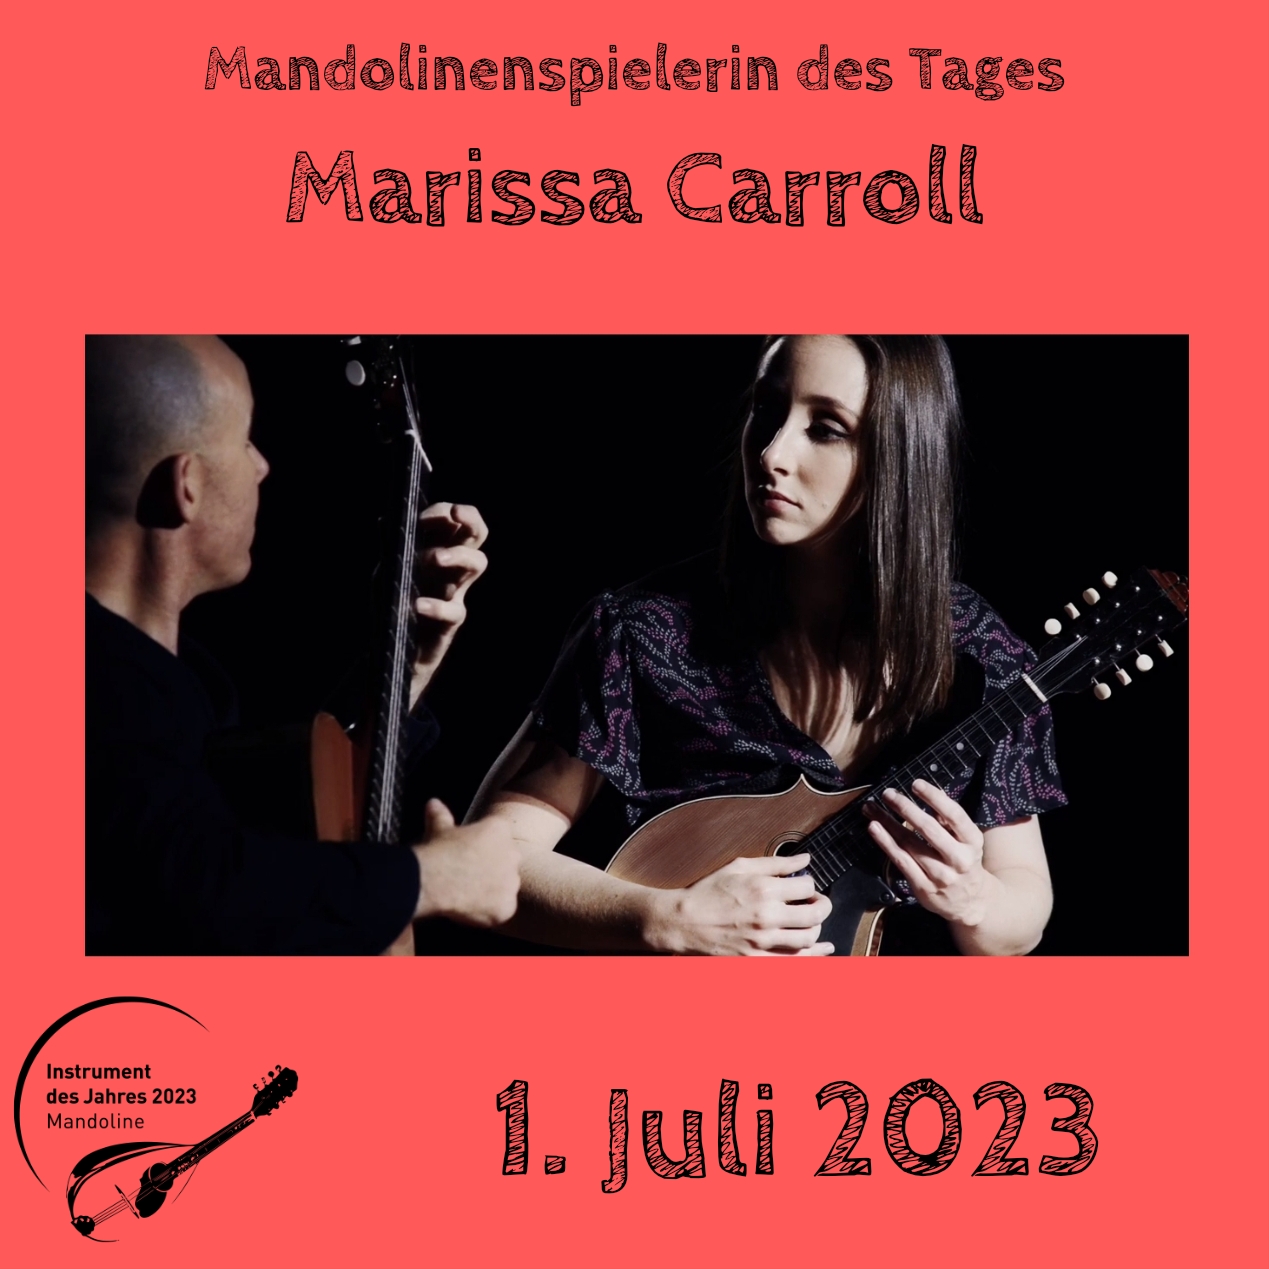 1. Juli - Marissa Carroll  Mandoline Instrument des Jahres 2023 Mandolinenspieler Mandolinenspielerin des Tages